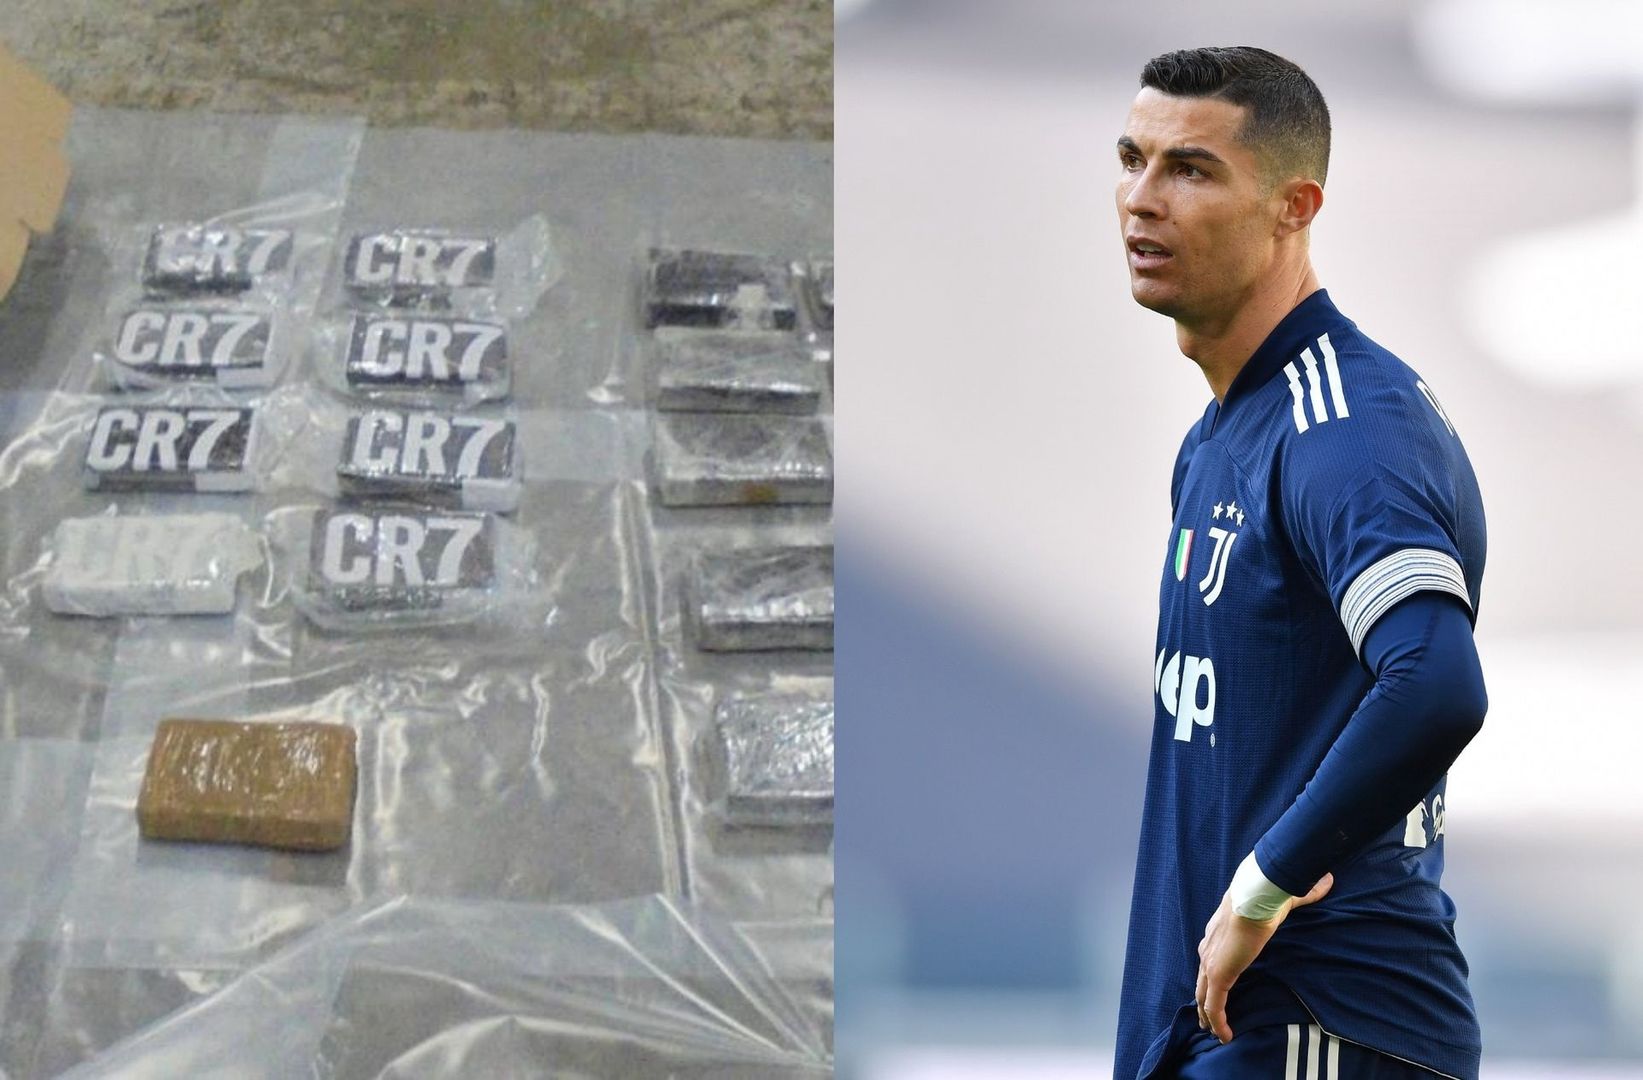 We Francji aż huczy. Kokaina podpisana inicjałami Cristiano Ronaldo